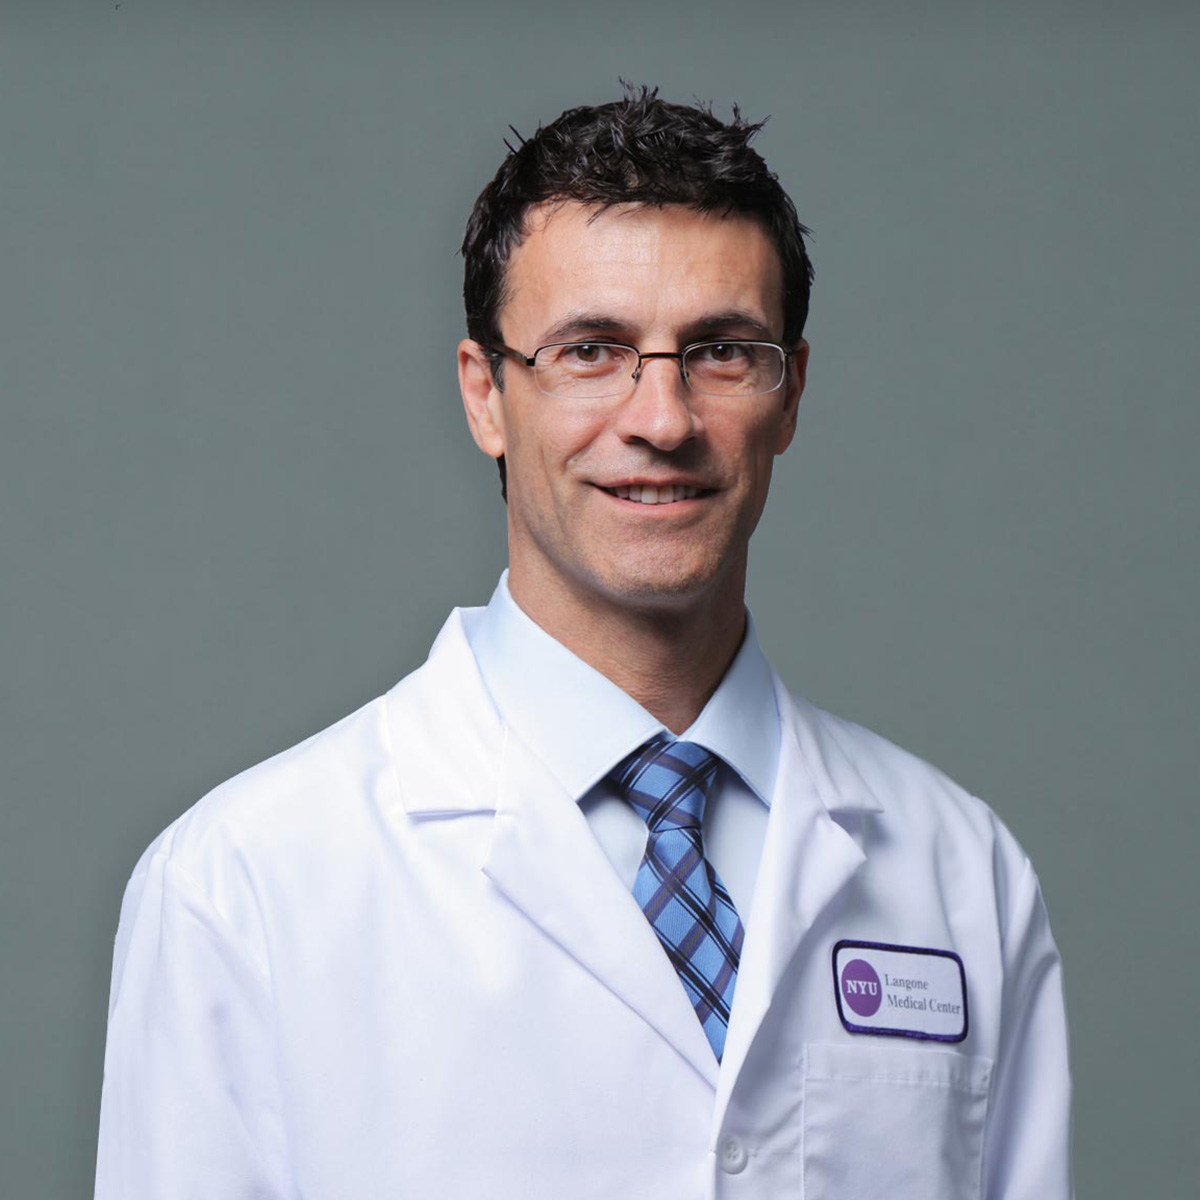 Michael Argilla,MD. Pediatric Cardiology